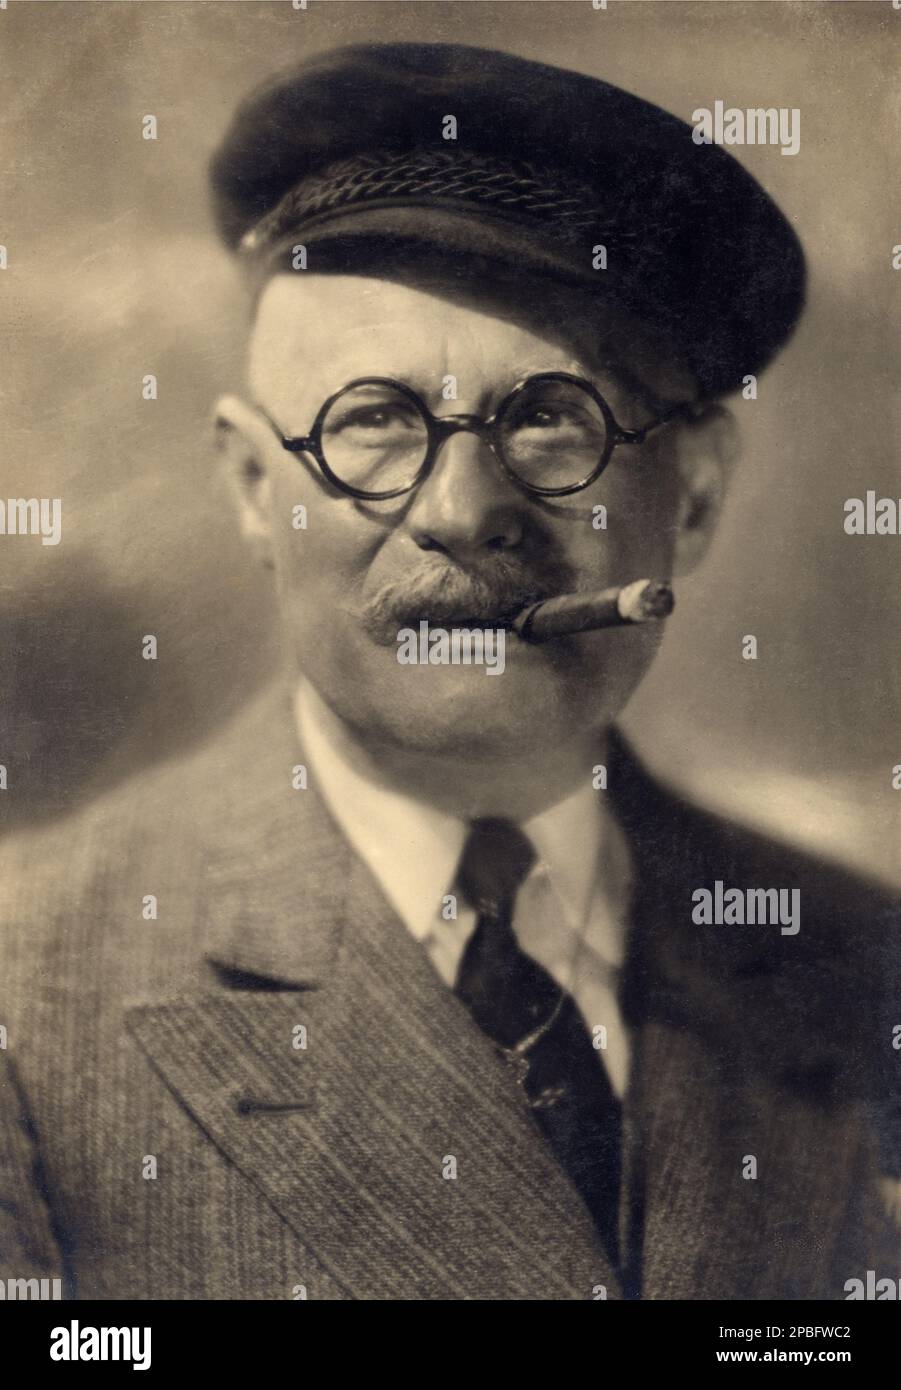 1926 ca : The silent movie german actor JULIUS FALKENSTEIN ( 1879 - 1933 ). Interpreter of ' Dr. Mabuse, der Spieler ' (1922) by Fritz Lang  - Ein Bild der Zeit  - SILENT MOVIE - CINEMA MUTO - sigaro - cigar - hat - cappello - collar - colletto - smoker - fumatore - smoke - fumo - lens - occhiali da vista - baffi - moustache  - Germany - Germania - uomo anziano vecchio - older ancient man ----  Archivio GBB Stock Photo